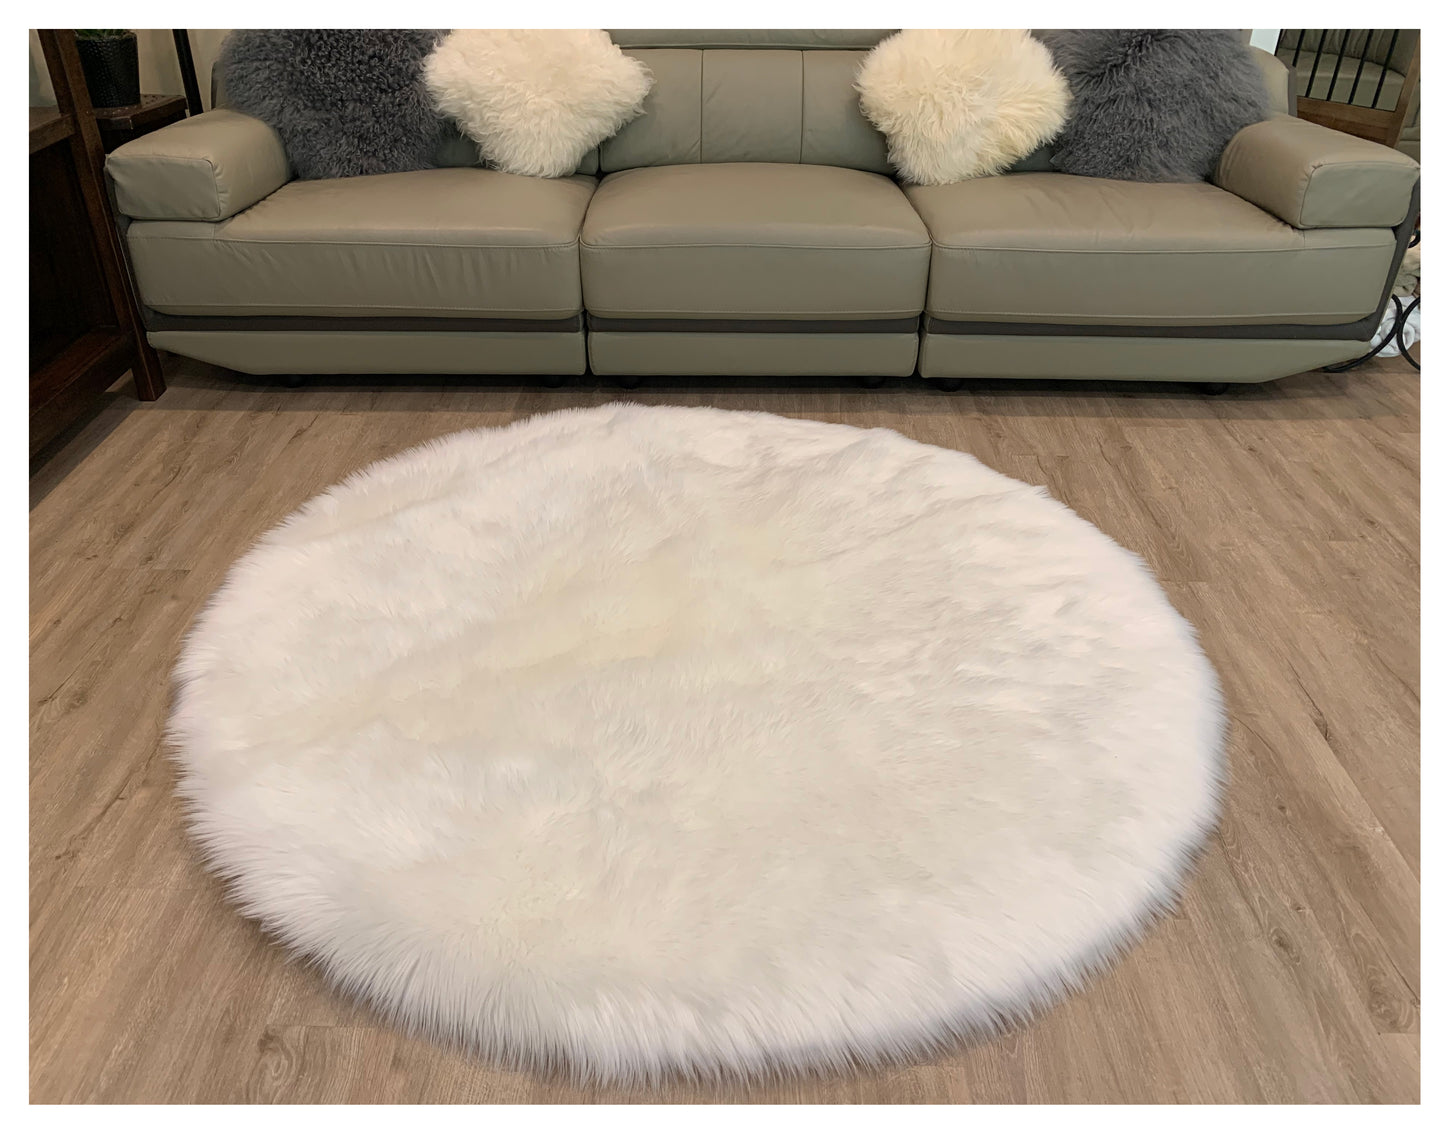 Runder Teppich aus künstlichem Schaffell, 3 Fuß (90 cm Durchmesser)